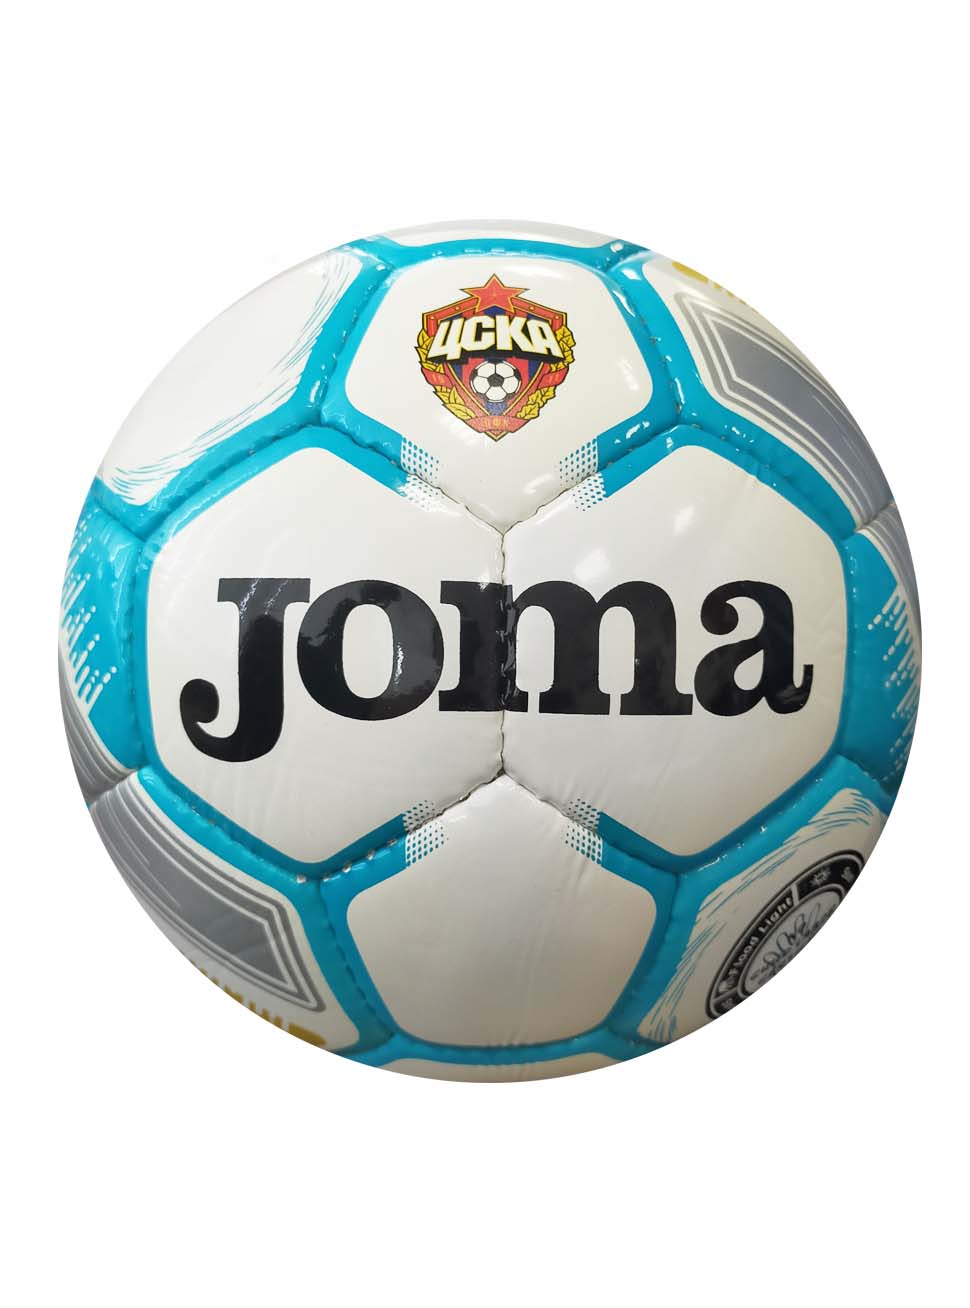 Мяч футбольный Joma Egeo с эмблемой ПФК ЦСКА, размер 5